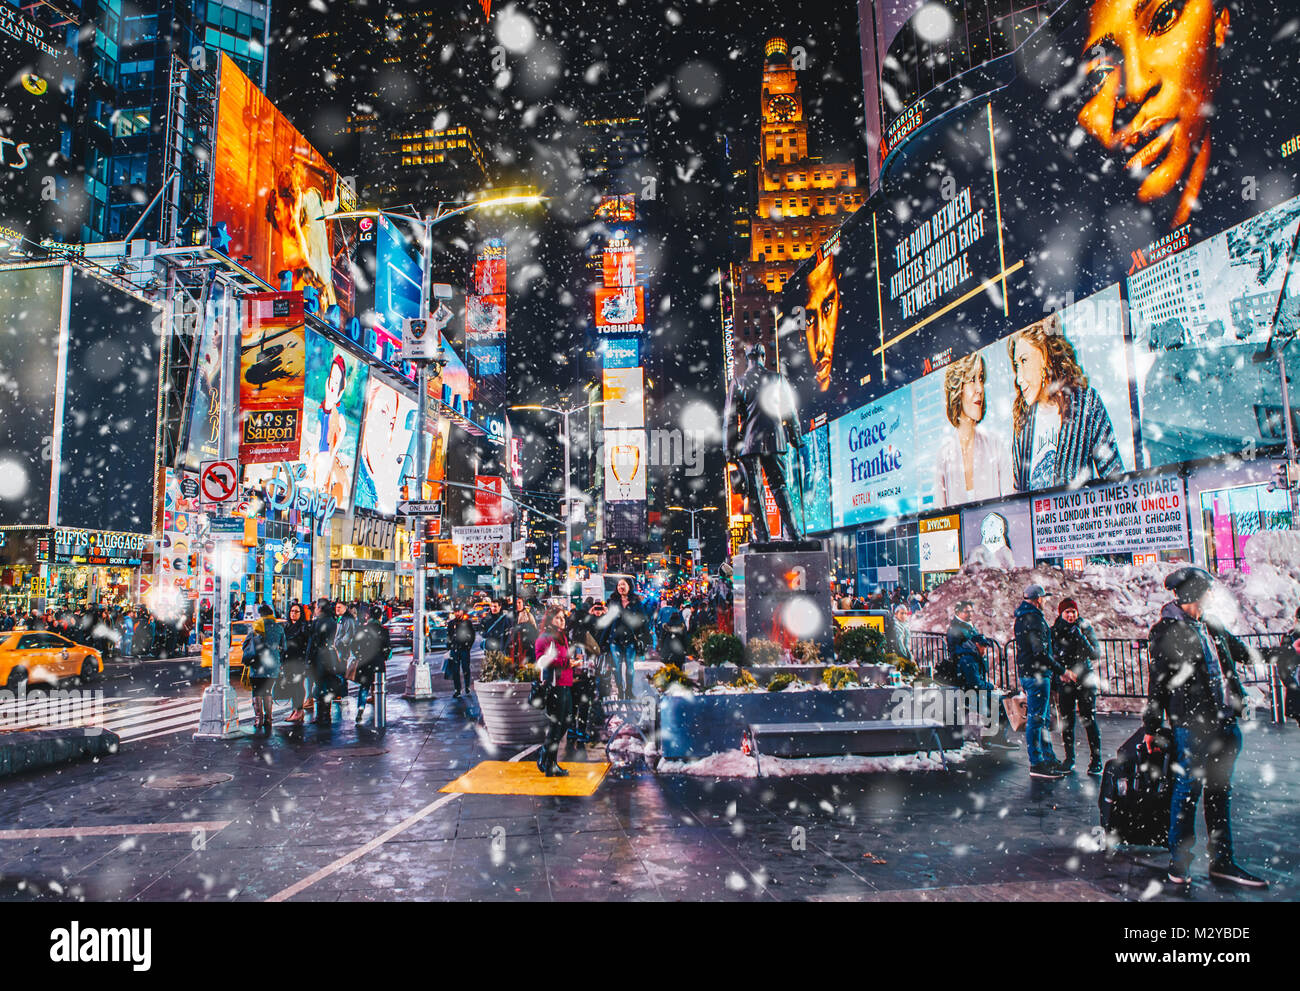 La Ciudad de Nueva York, EE.UU. - Marzo 18, 2017: la gente y la famosa led  paneles publicitarios en Times Square durante la nieve, uno de los símbolos  de la ciudad de